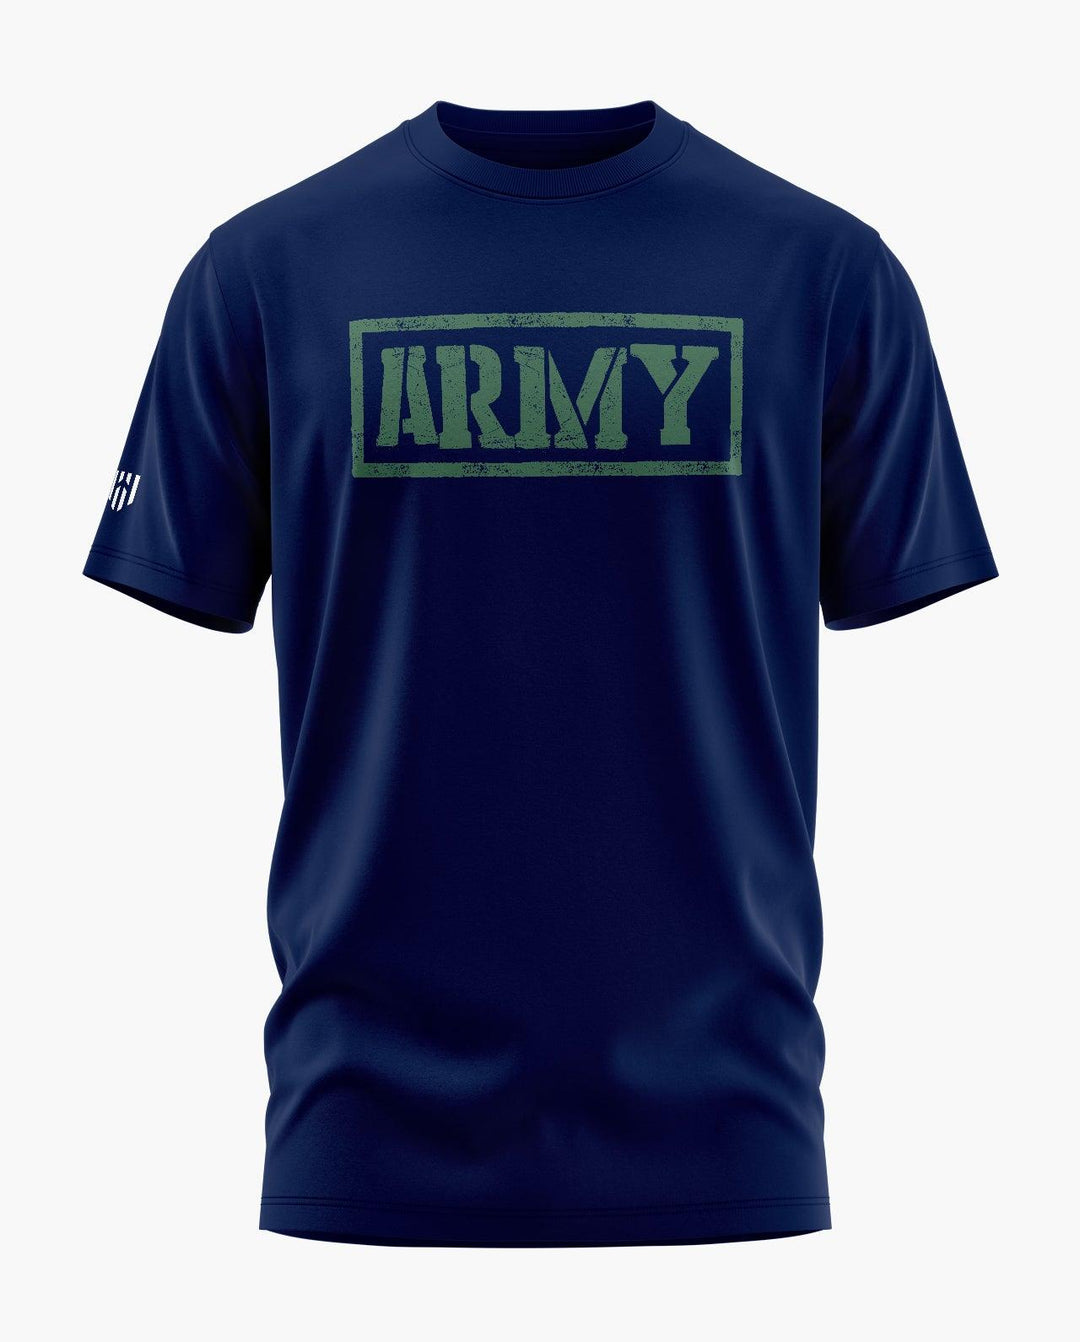 Army Stamp T-Shirt - Aero Armour